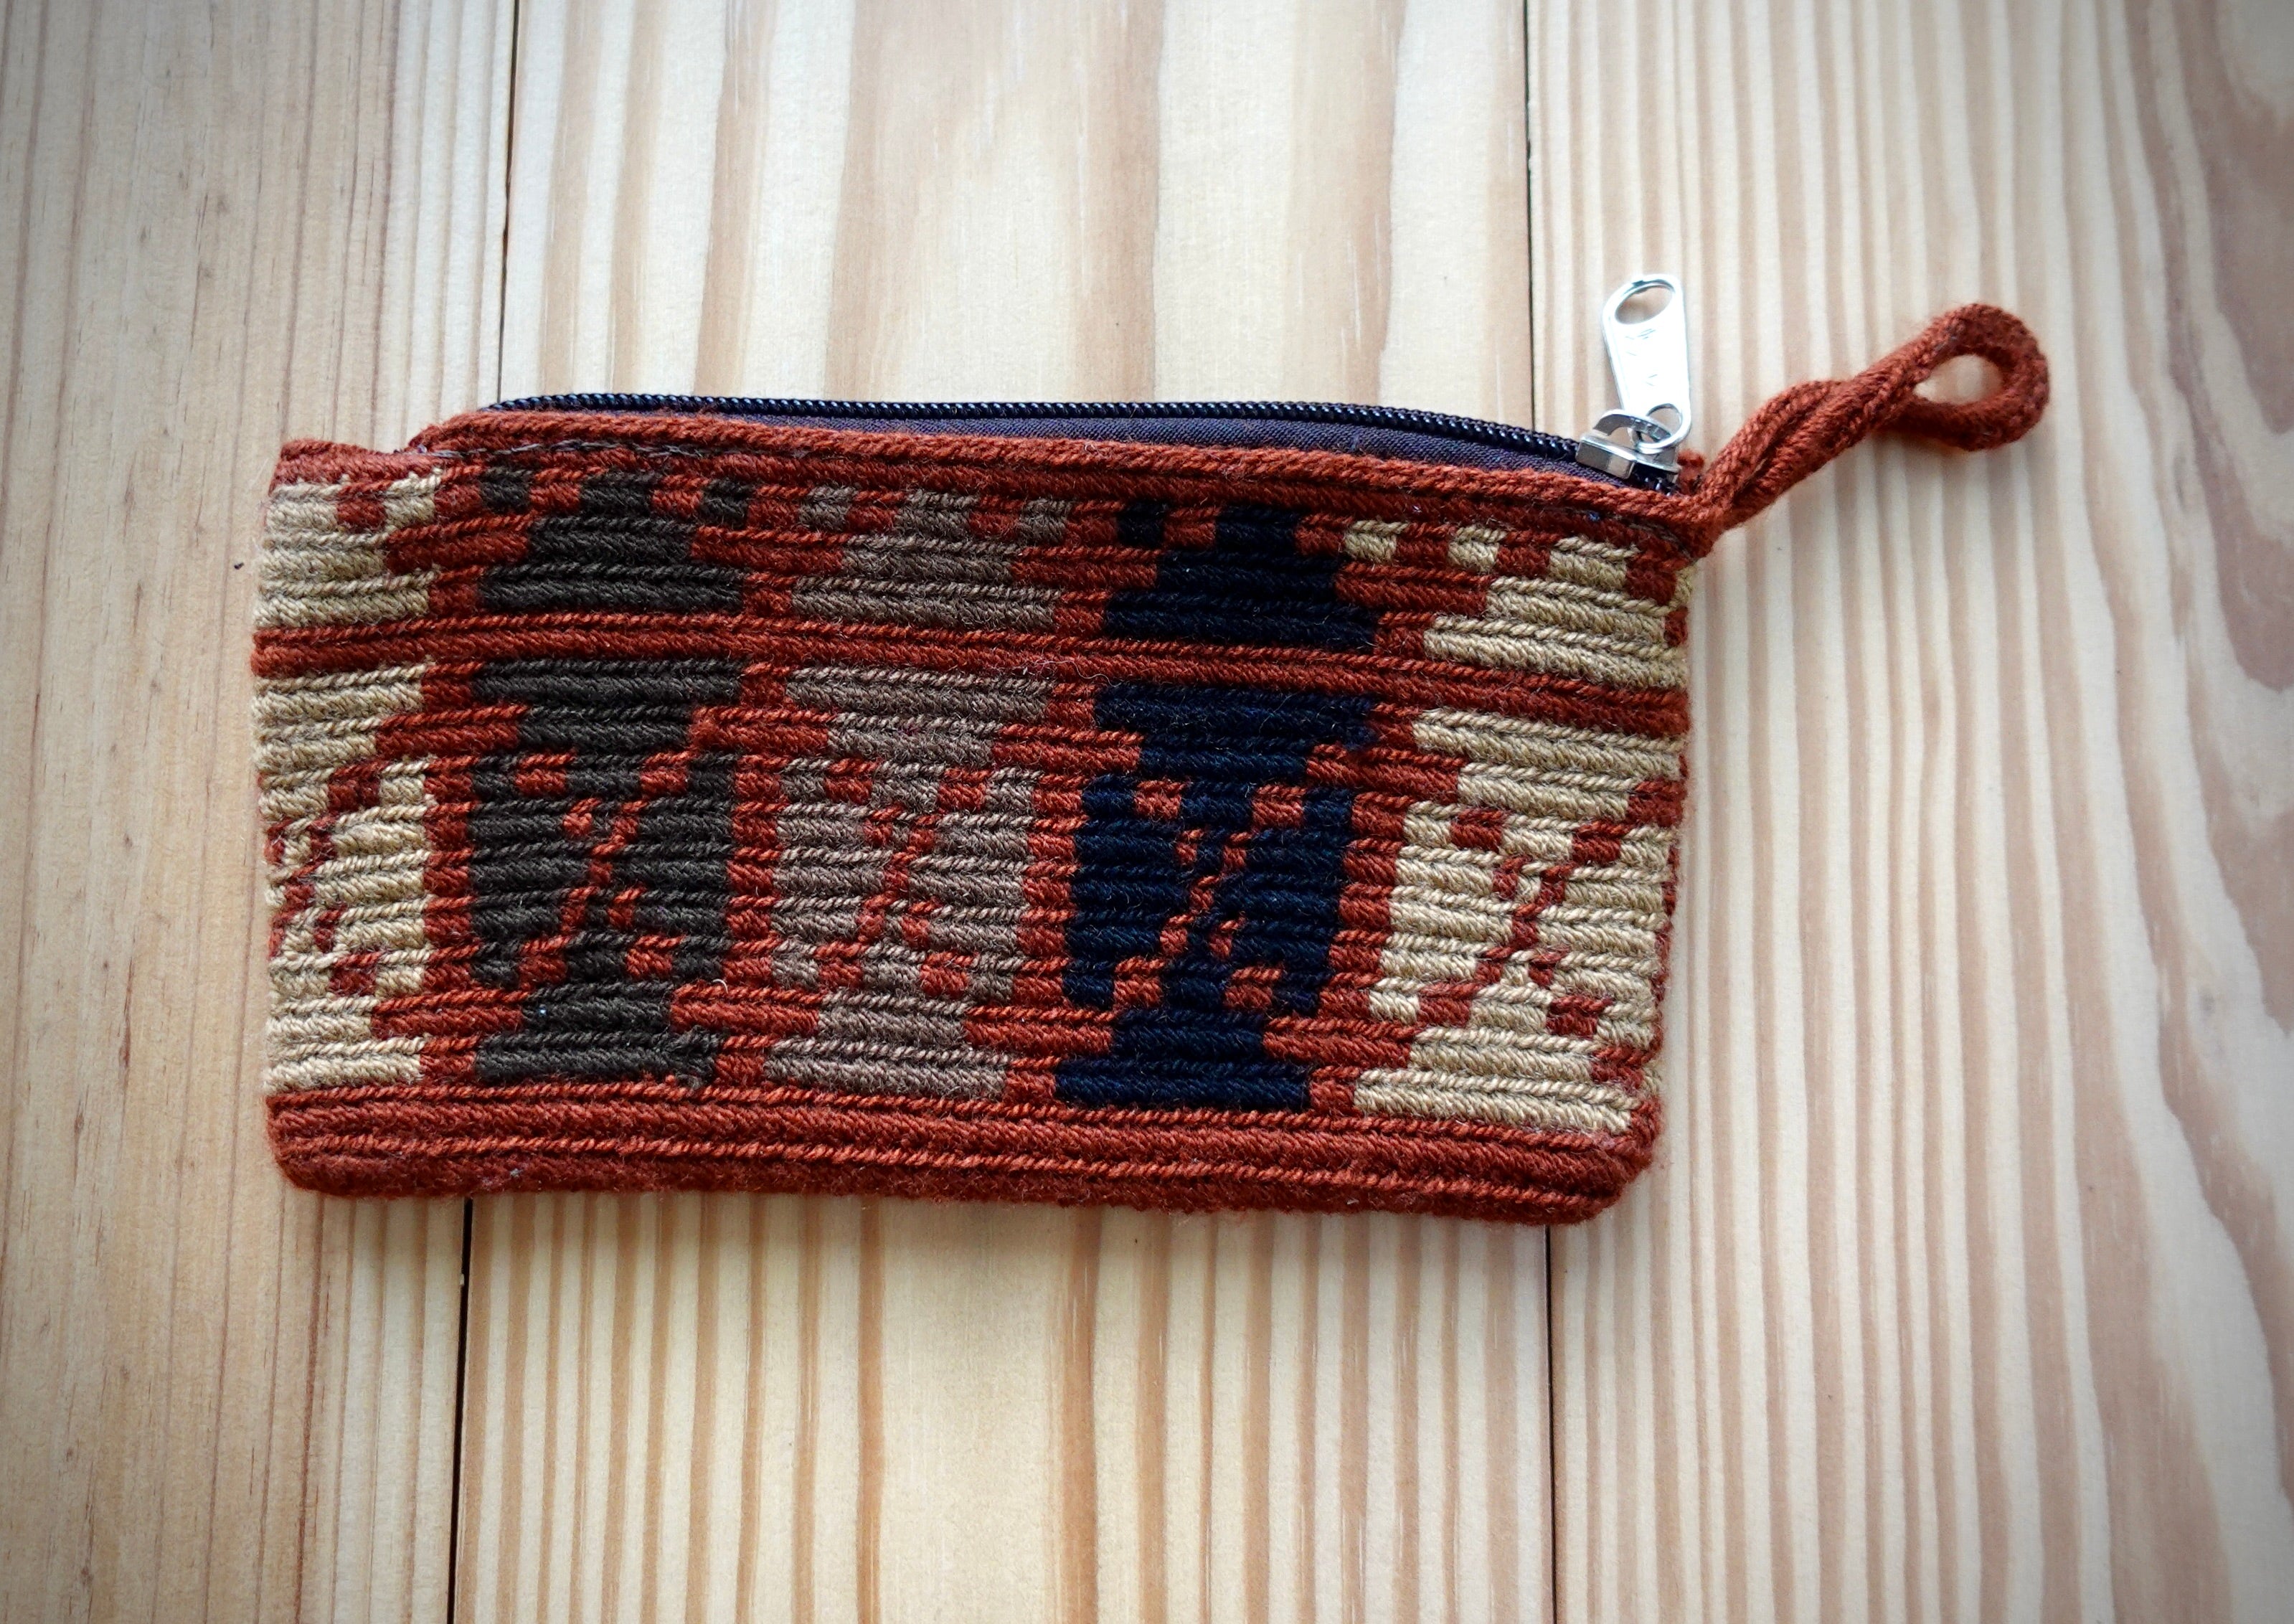 Maozieuqui Wayuu Handmade Wristlet Clutch, Small